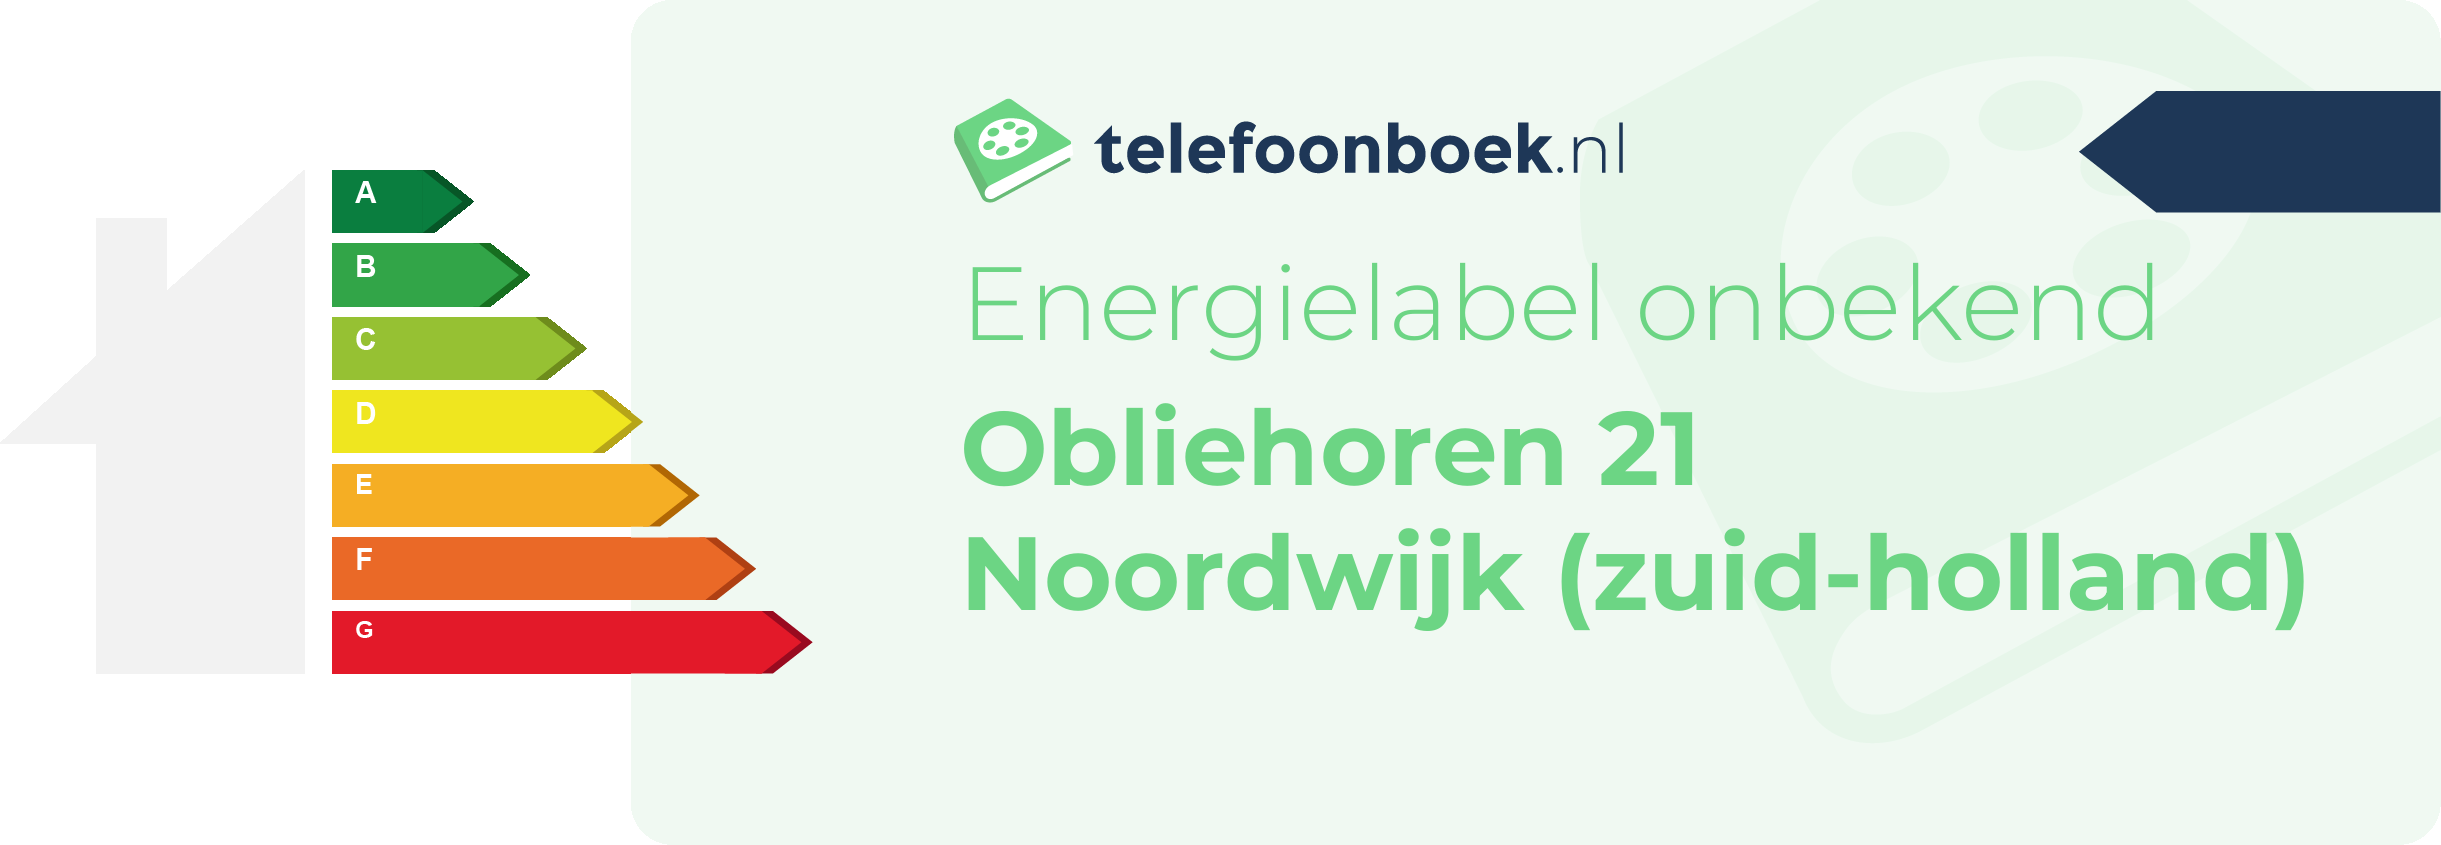 Energielabel Obliehoren 21 Noordwijk (Zuid-Holland)